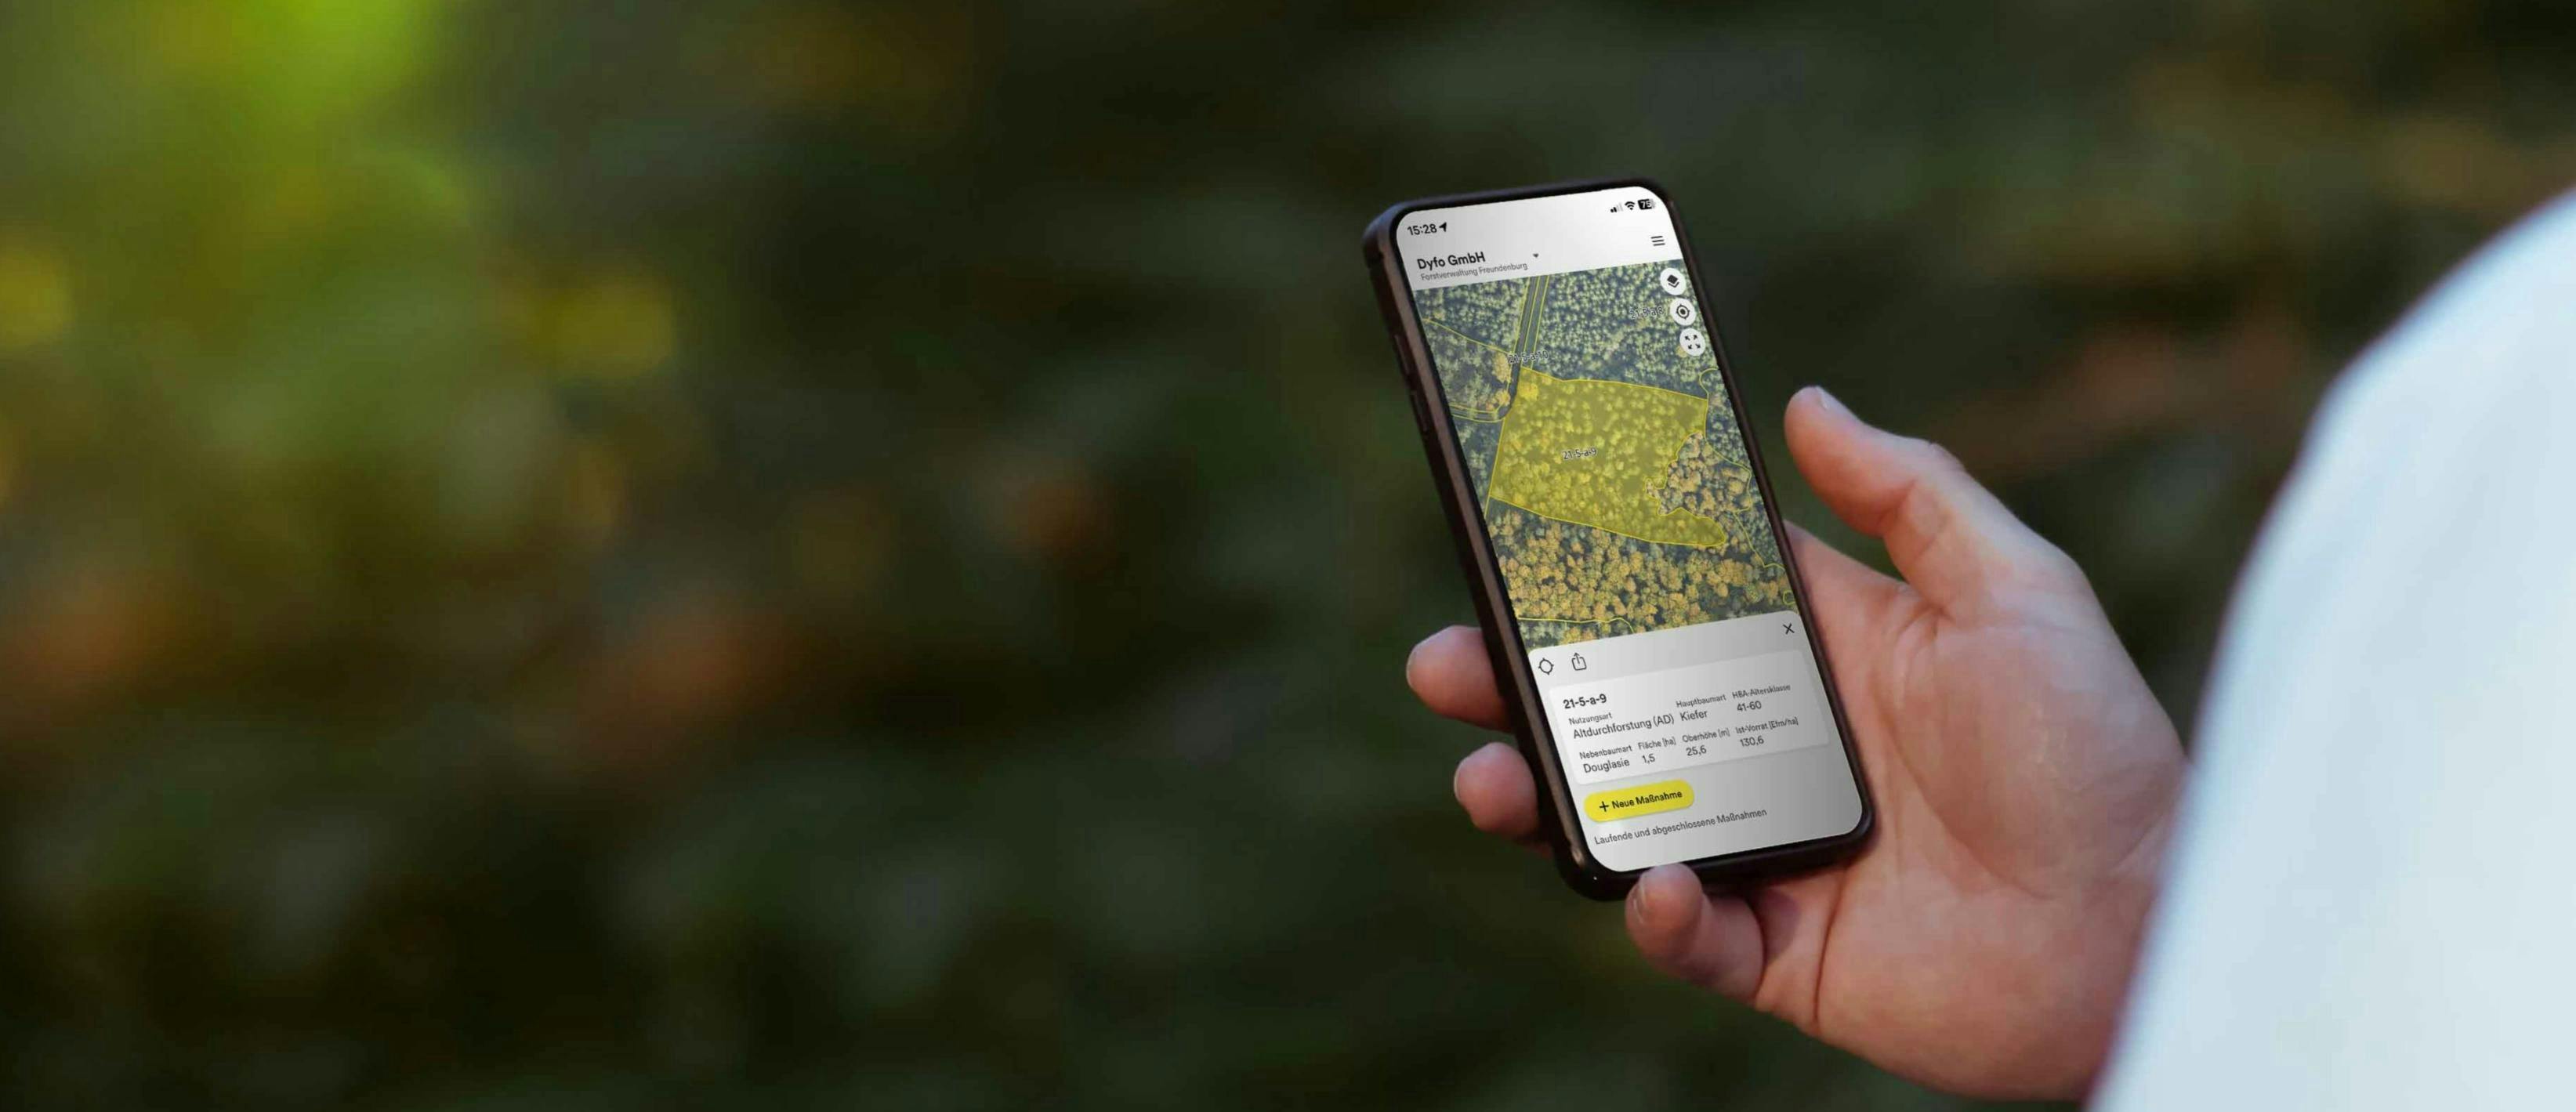 Smartphone, welches die Dynamic Forest App zeigt 